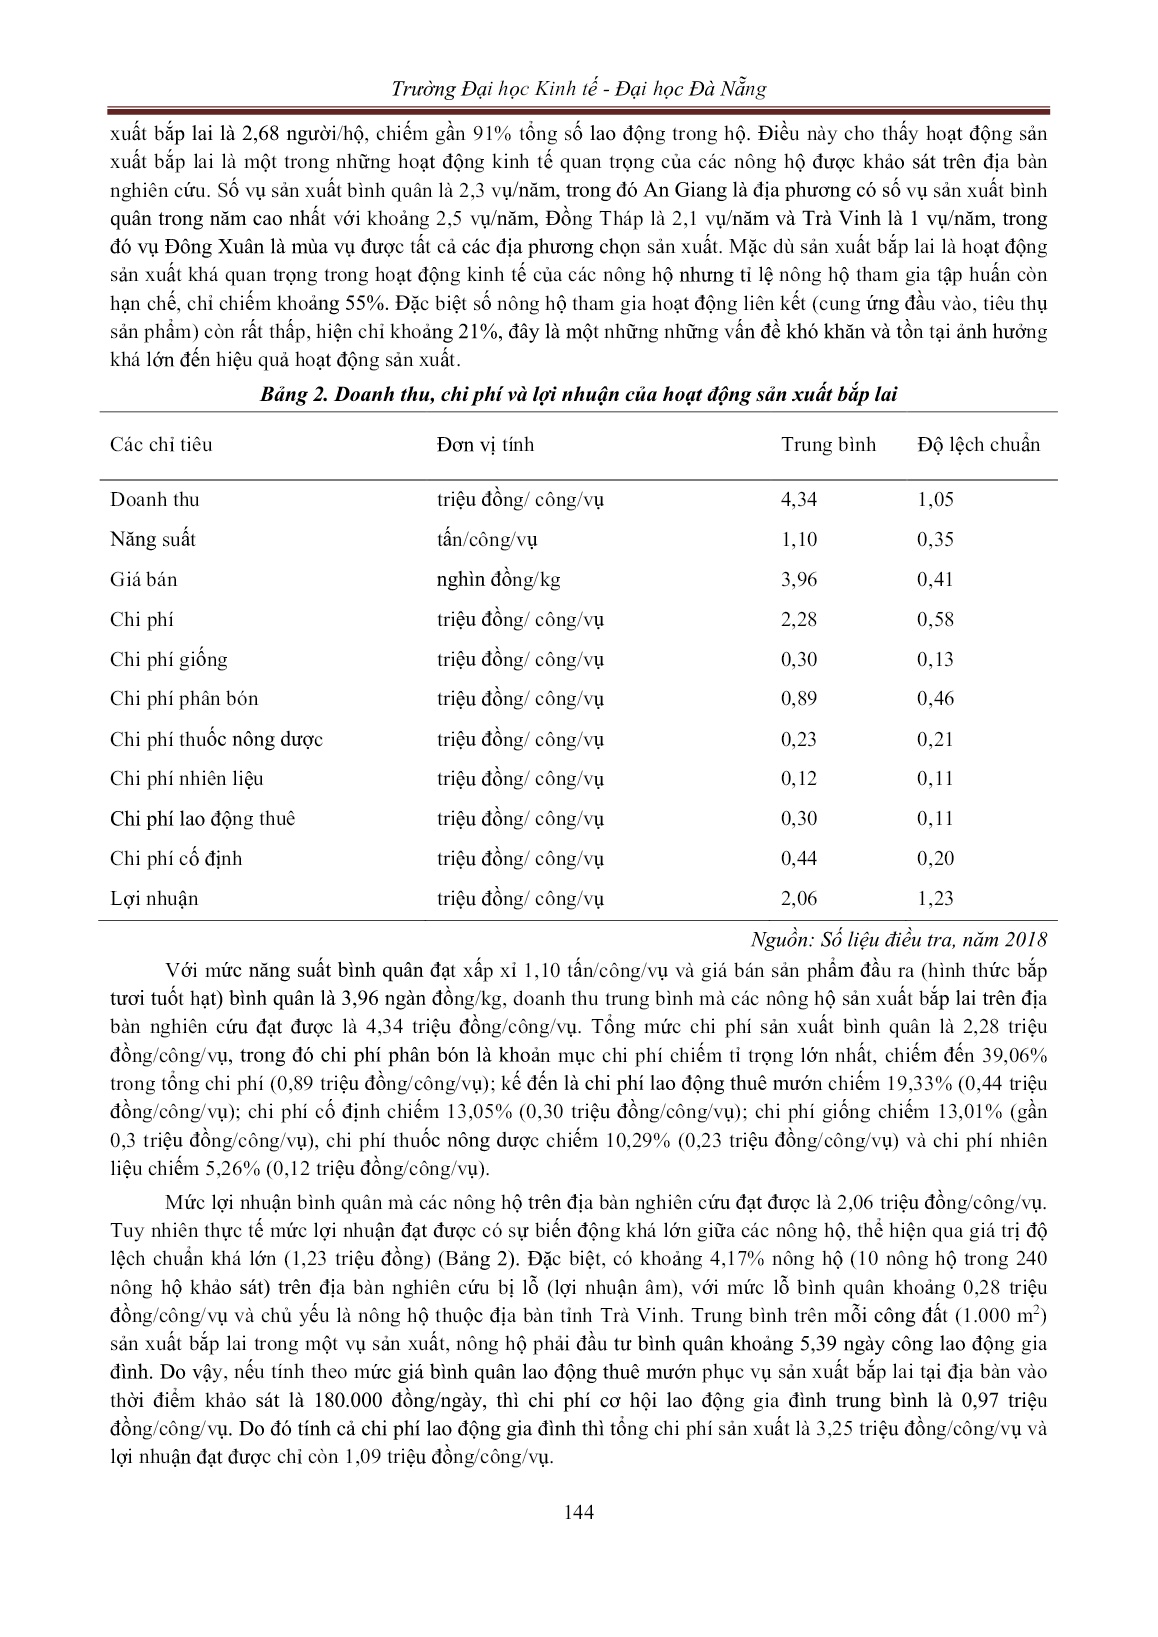 Hiệu quả sử dụng đầu vào trong sản xuất bắp lai ở đồng bằng sông Cửu Long: Ứng dụng phương pháp ước lượng một bước trang 6